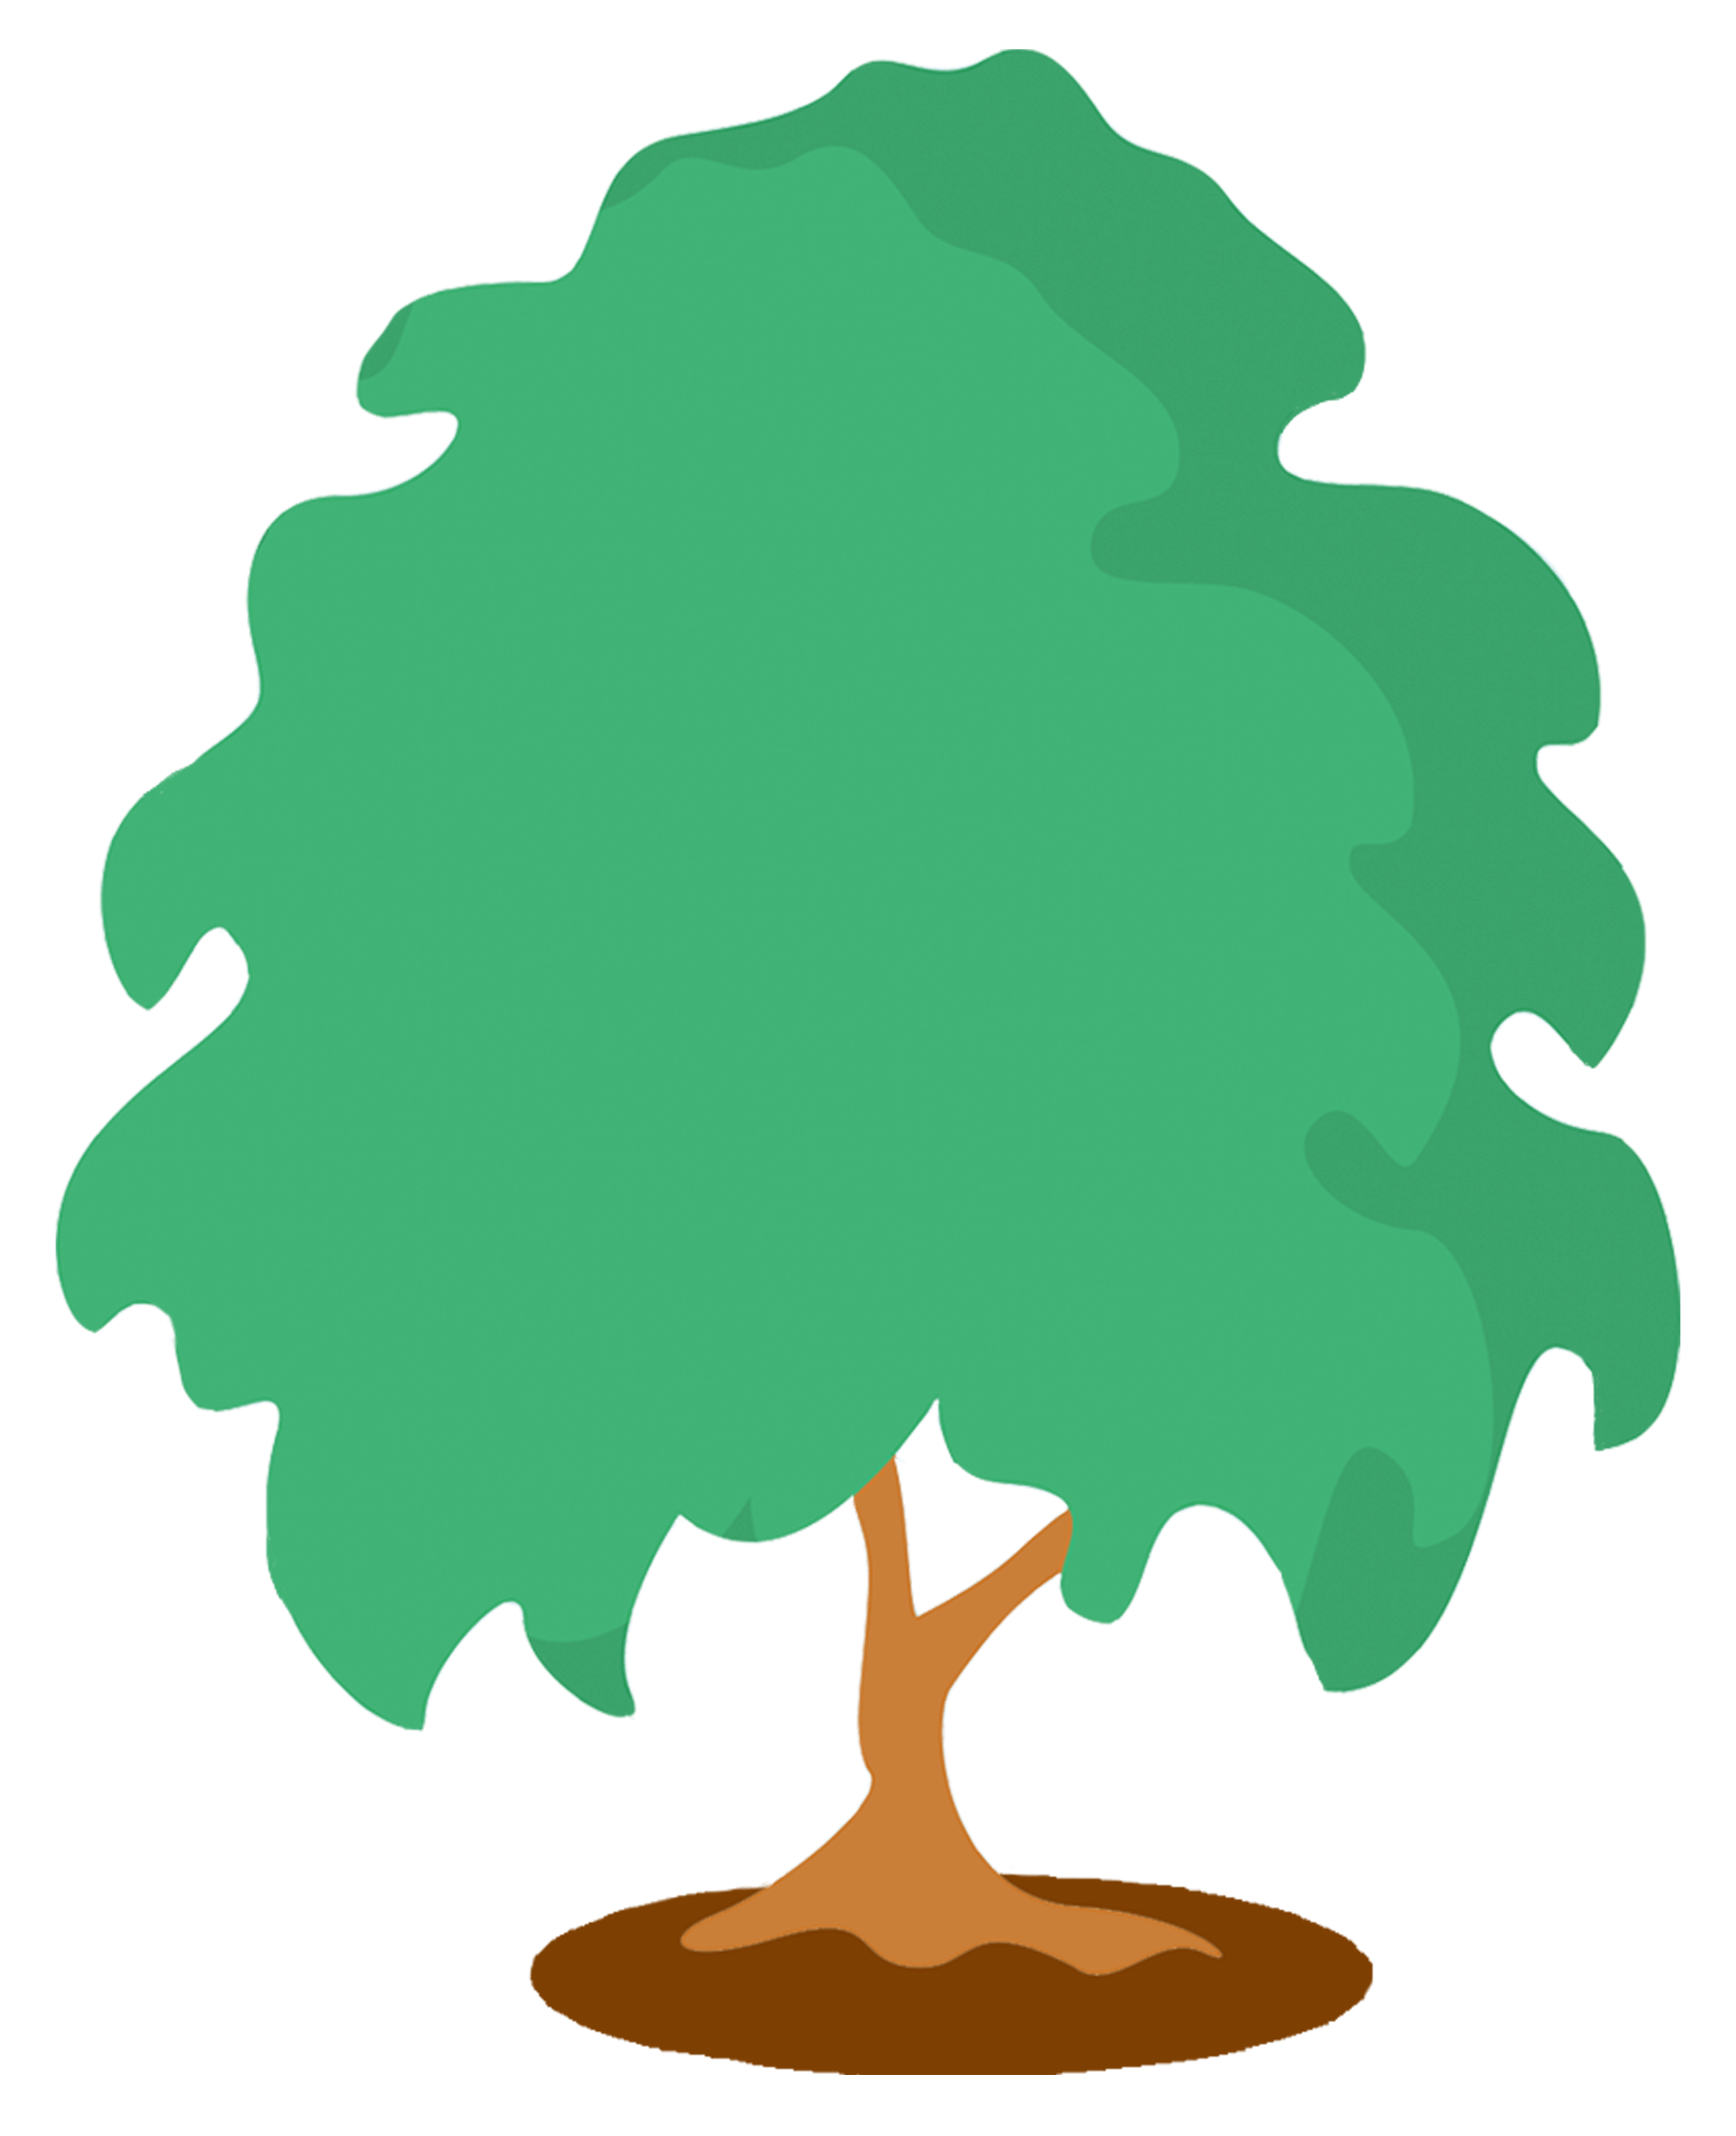 Single Tree Vector | Tree Vectors by Vecteezy | [ https://www.vecteezy.com/free-vector/tree ]